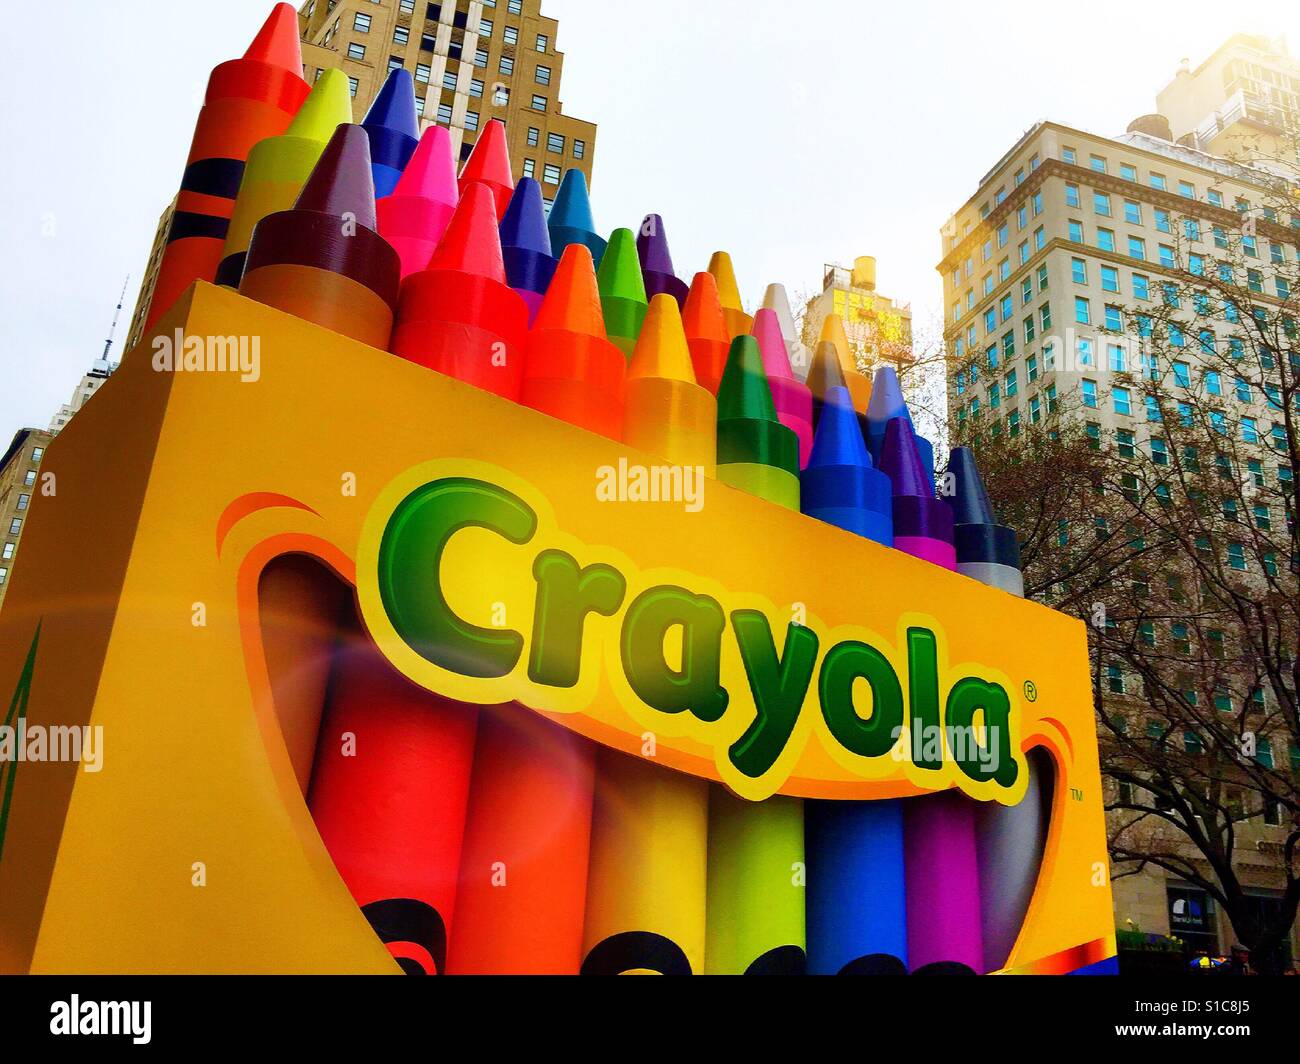 Crayola - Giant Box of Crayon